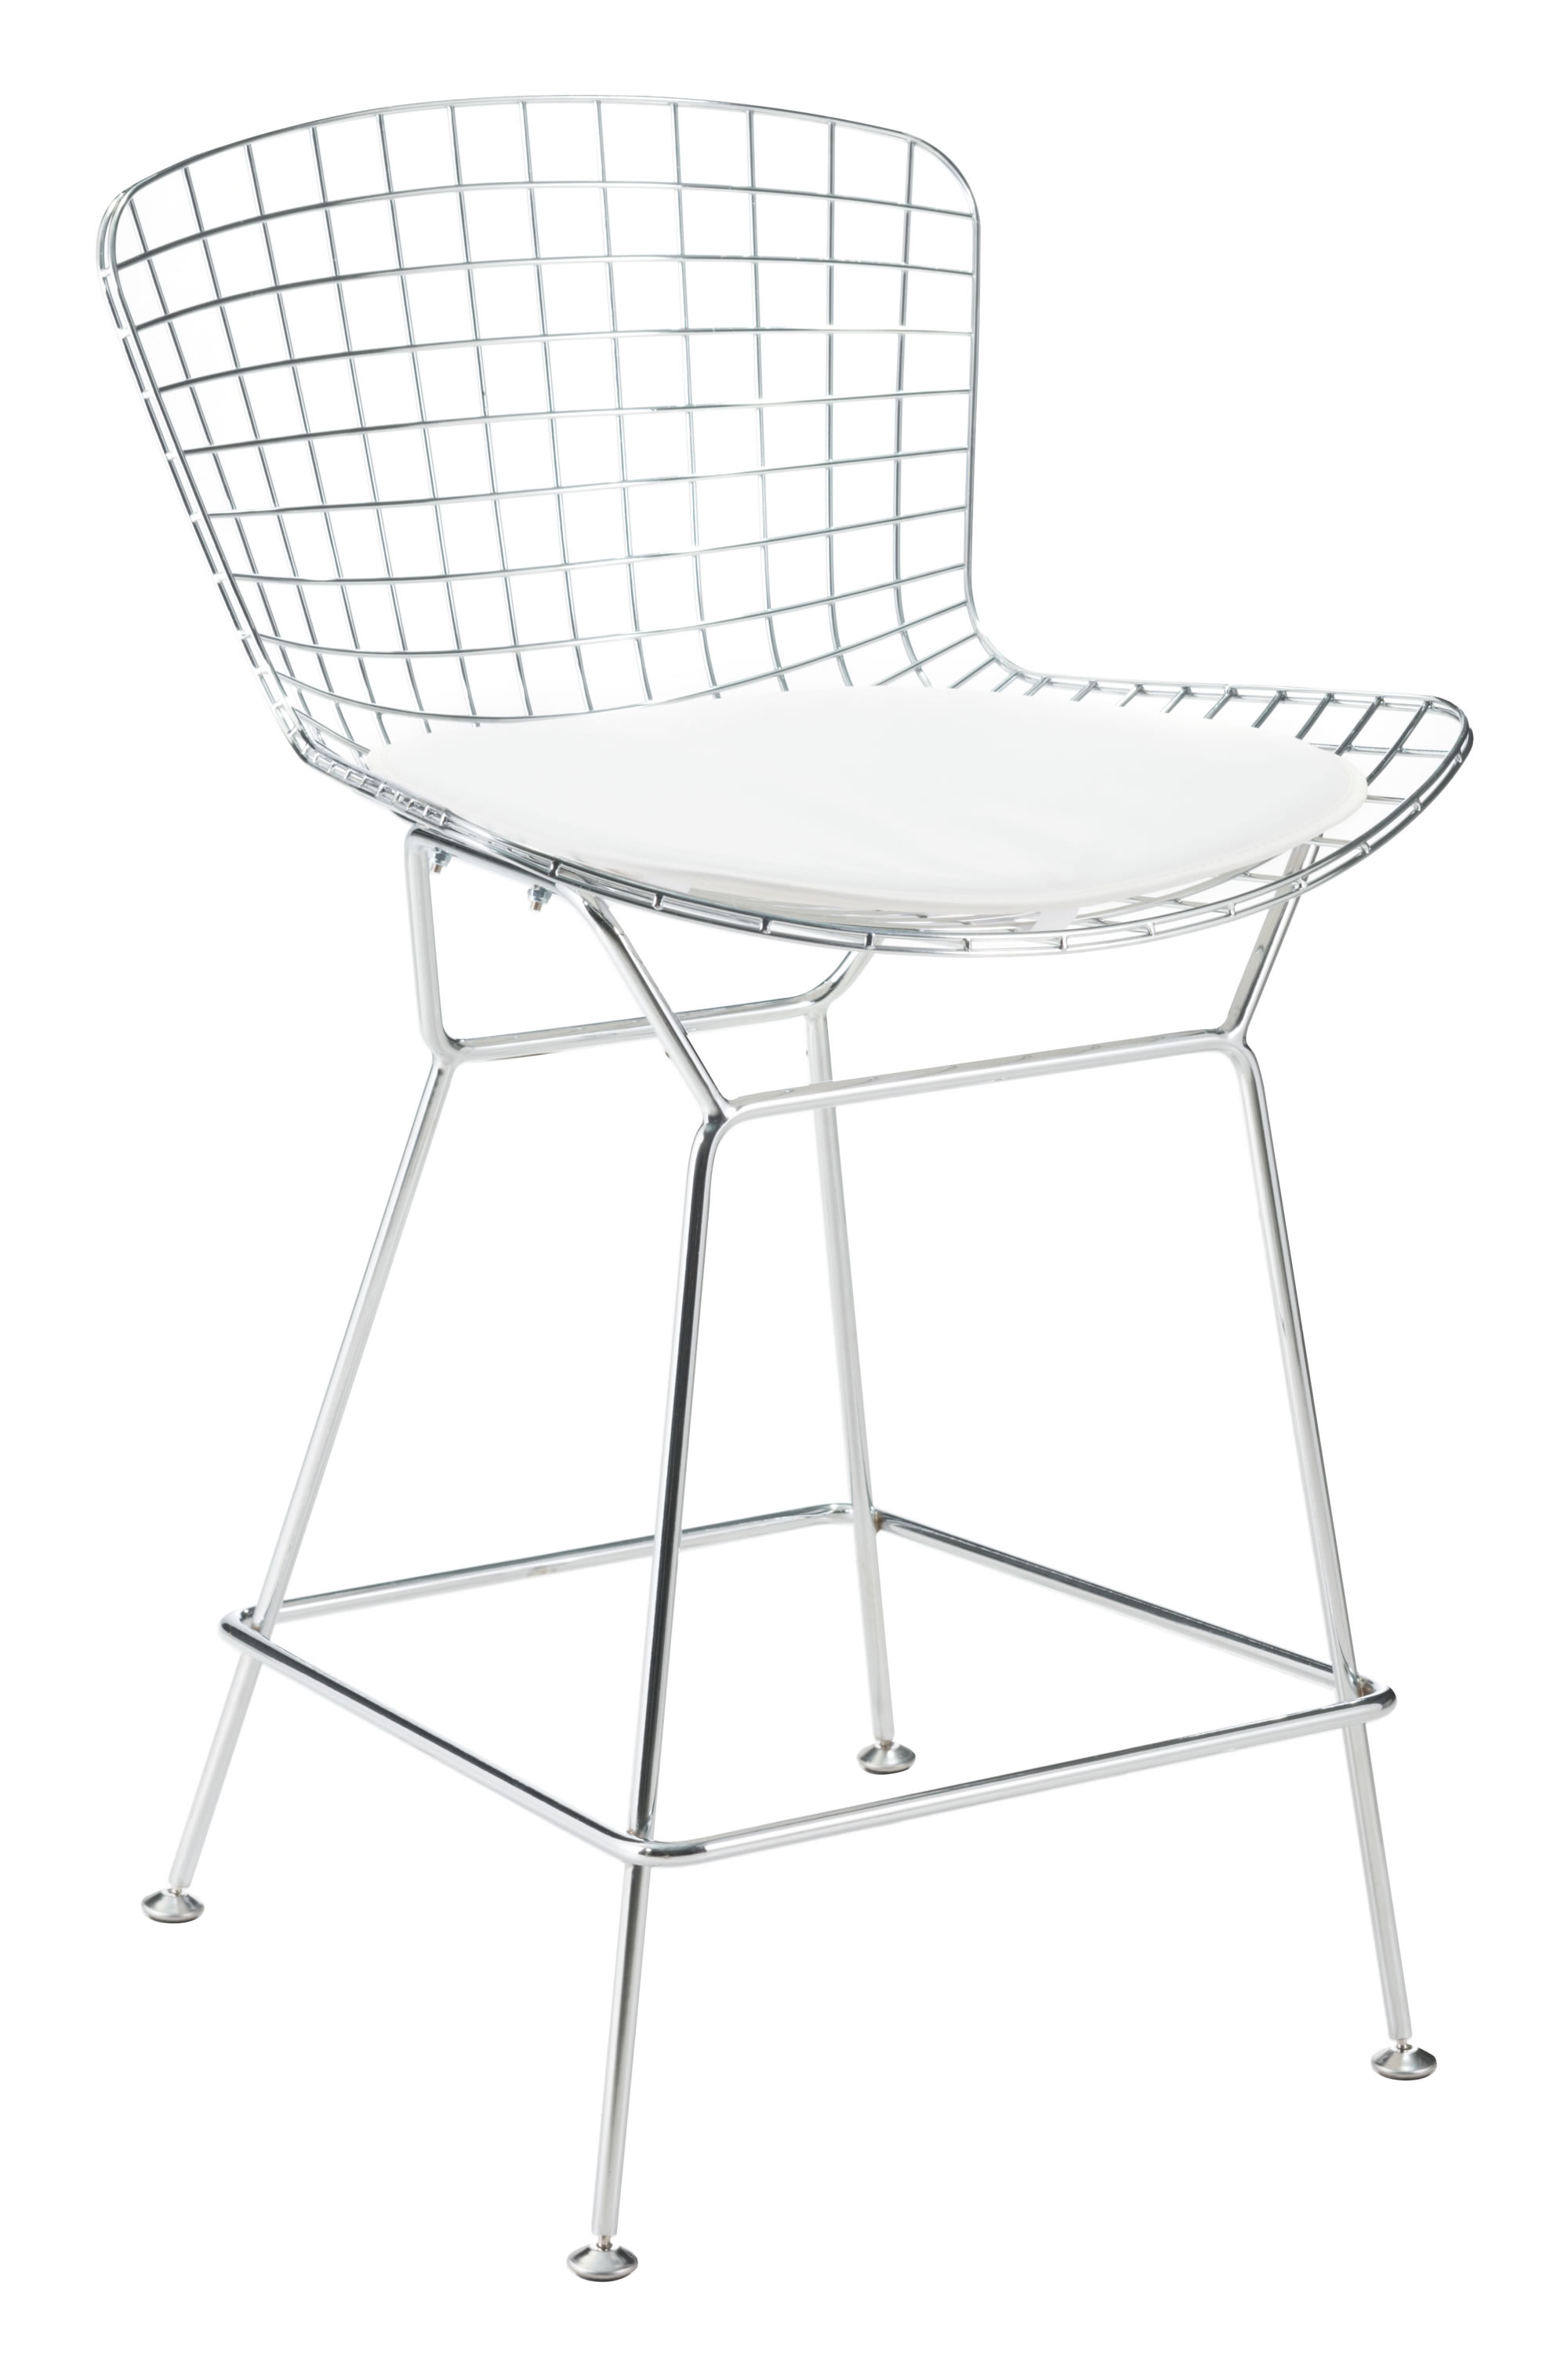 17" x 17" x 0.5" White, Leatherette, Chair Cushion